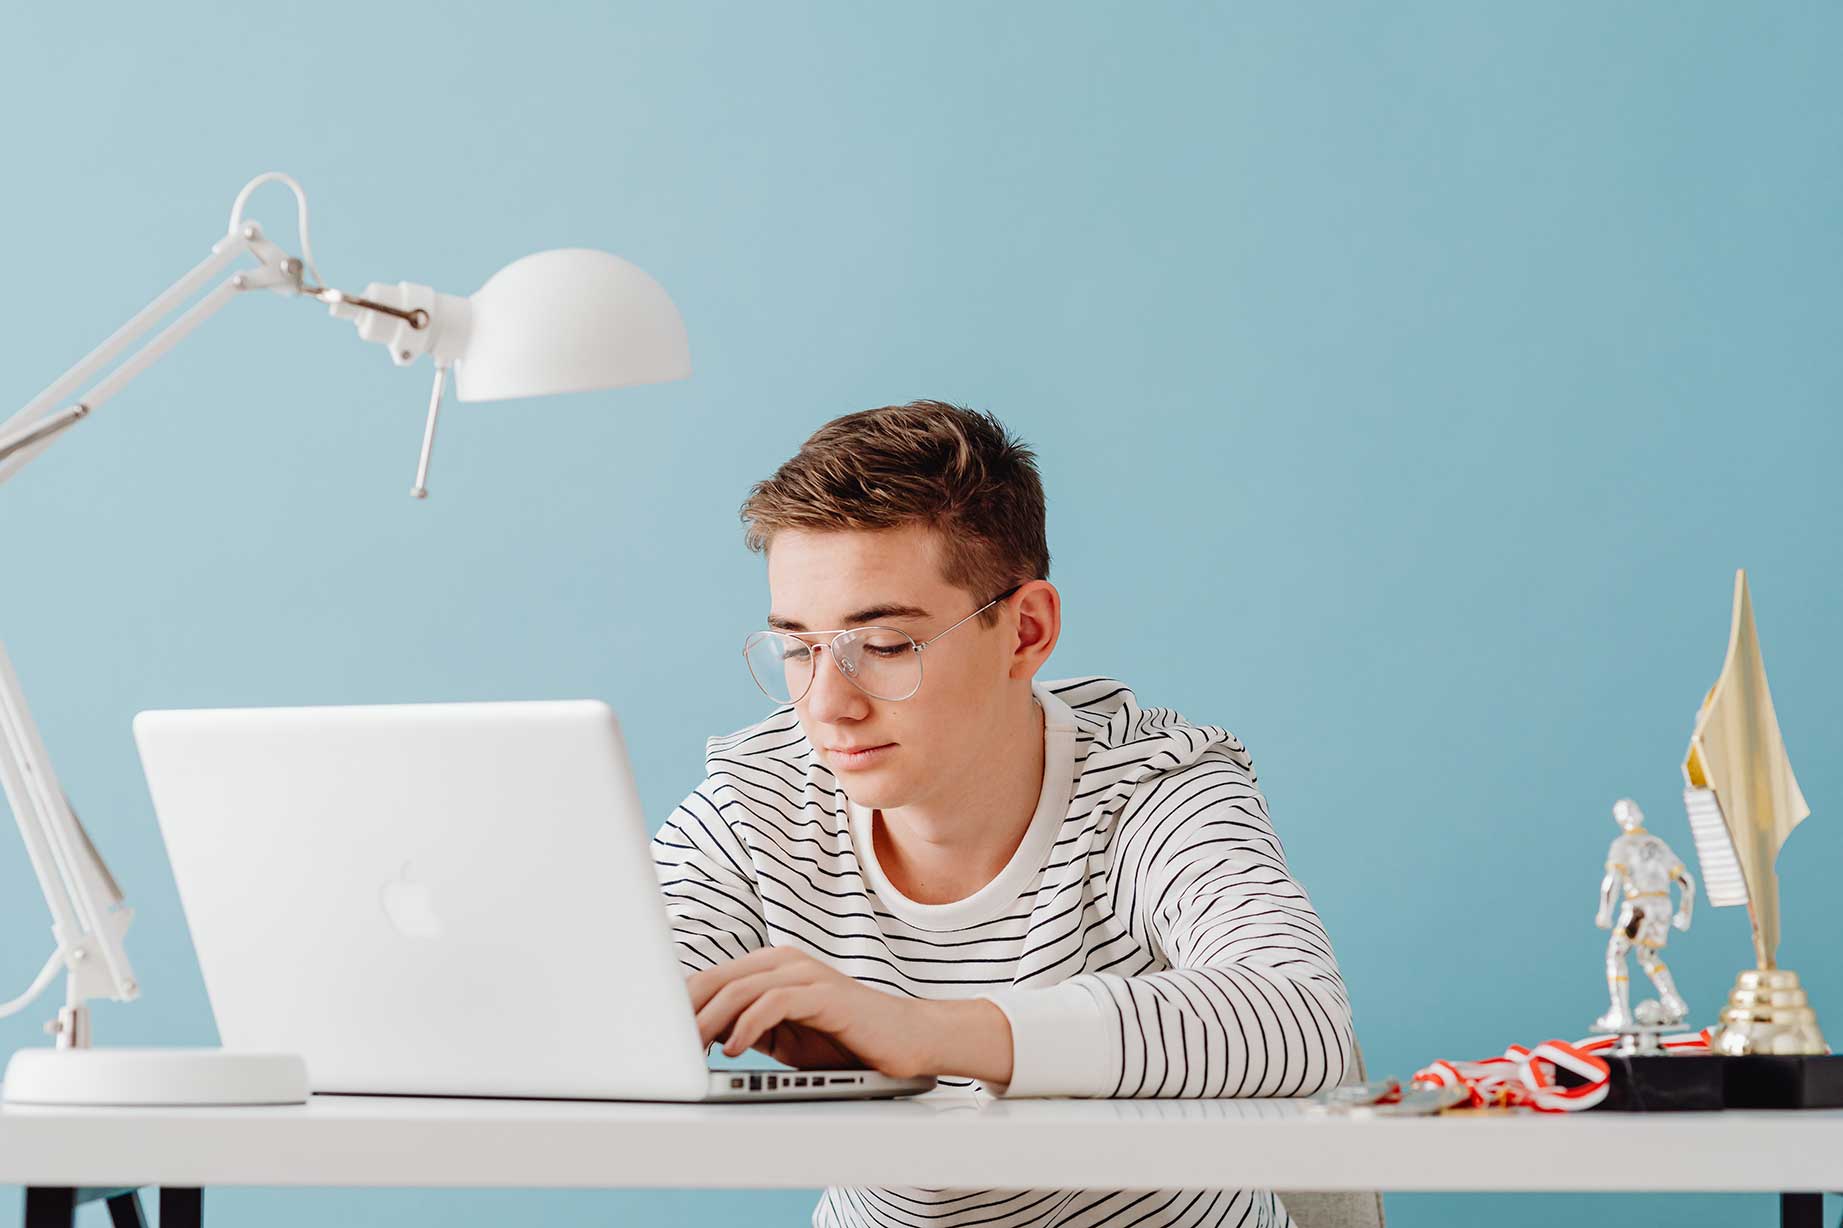 zu sehen ist ein Junge im Teenager-Alter, der mit seinem Laptop an seinem Schreibtisch im Jugendzimmer sitzt. Das Thema sind Script-Kiddies, also jugendliche Amateur-Hacker. Bild: Pexels/Karolina Grabowska